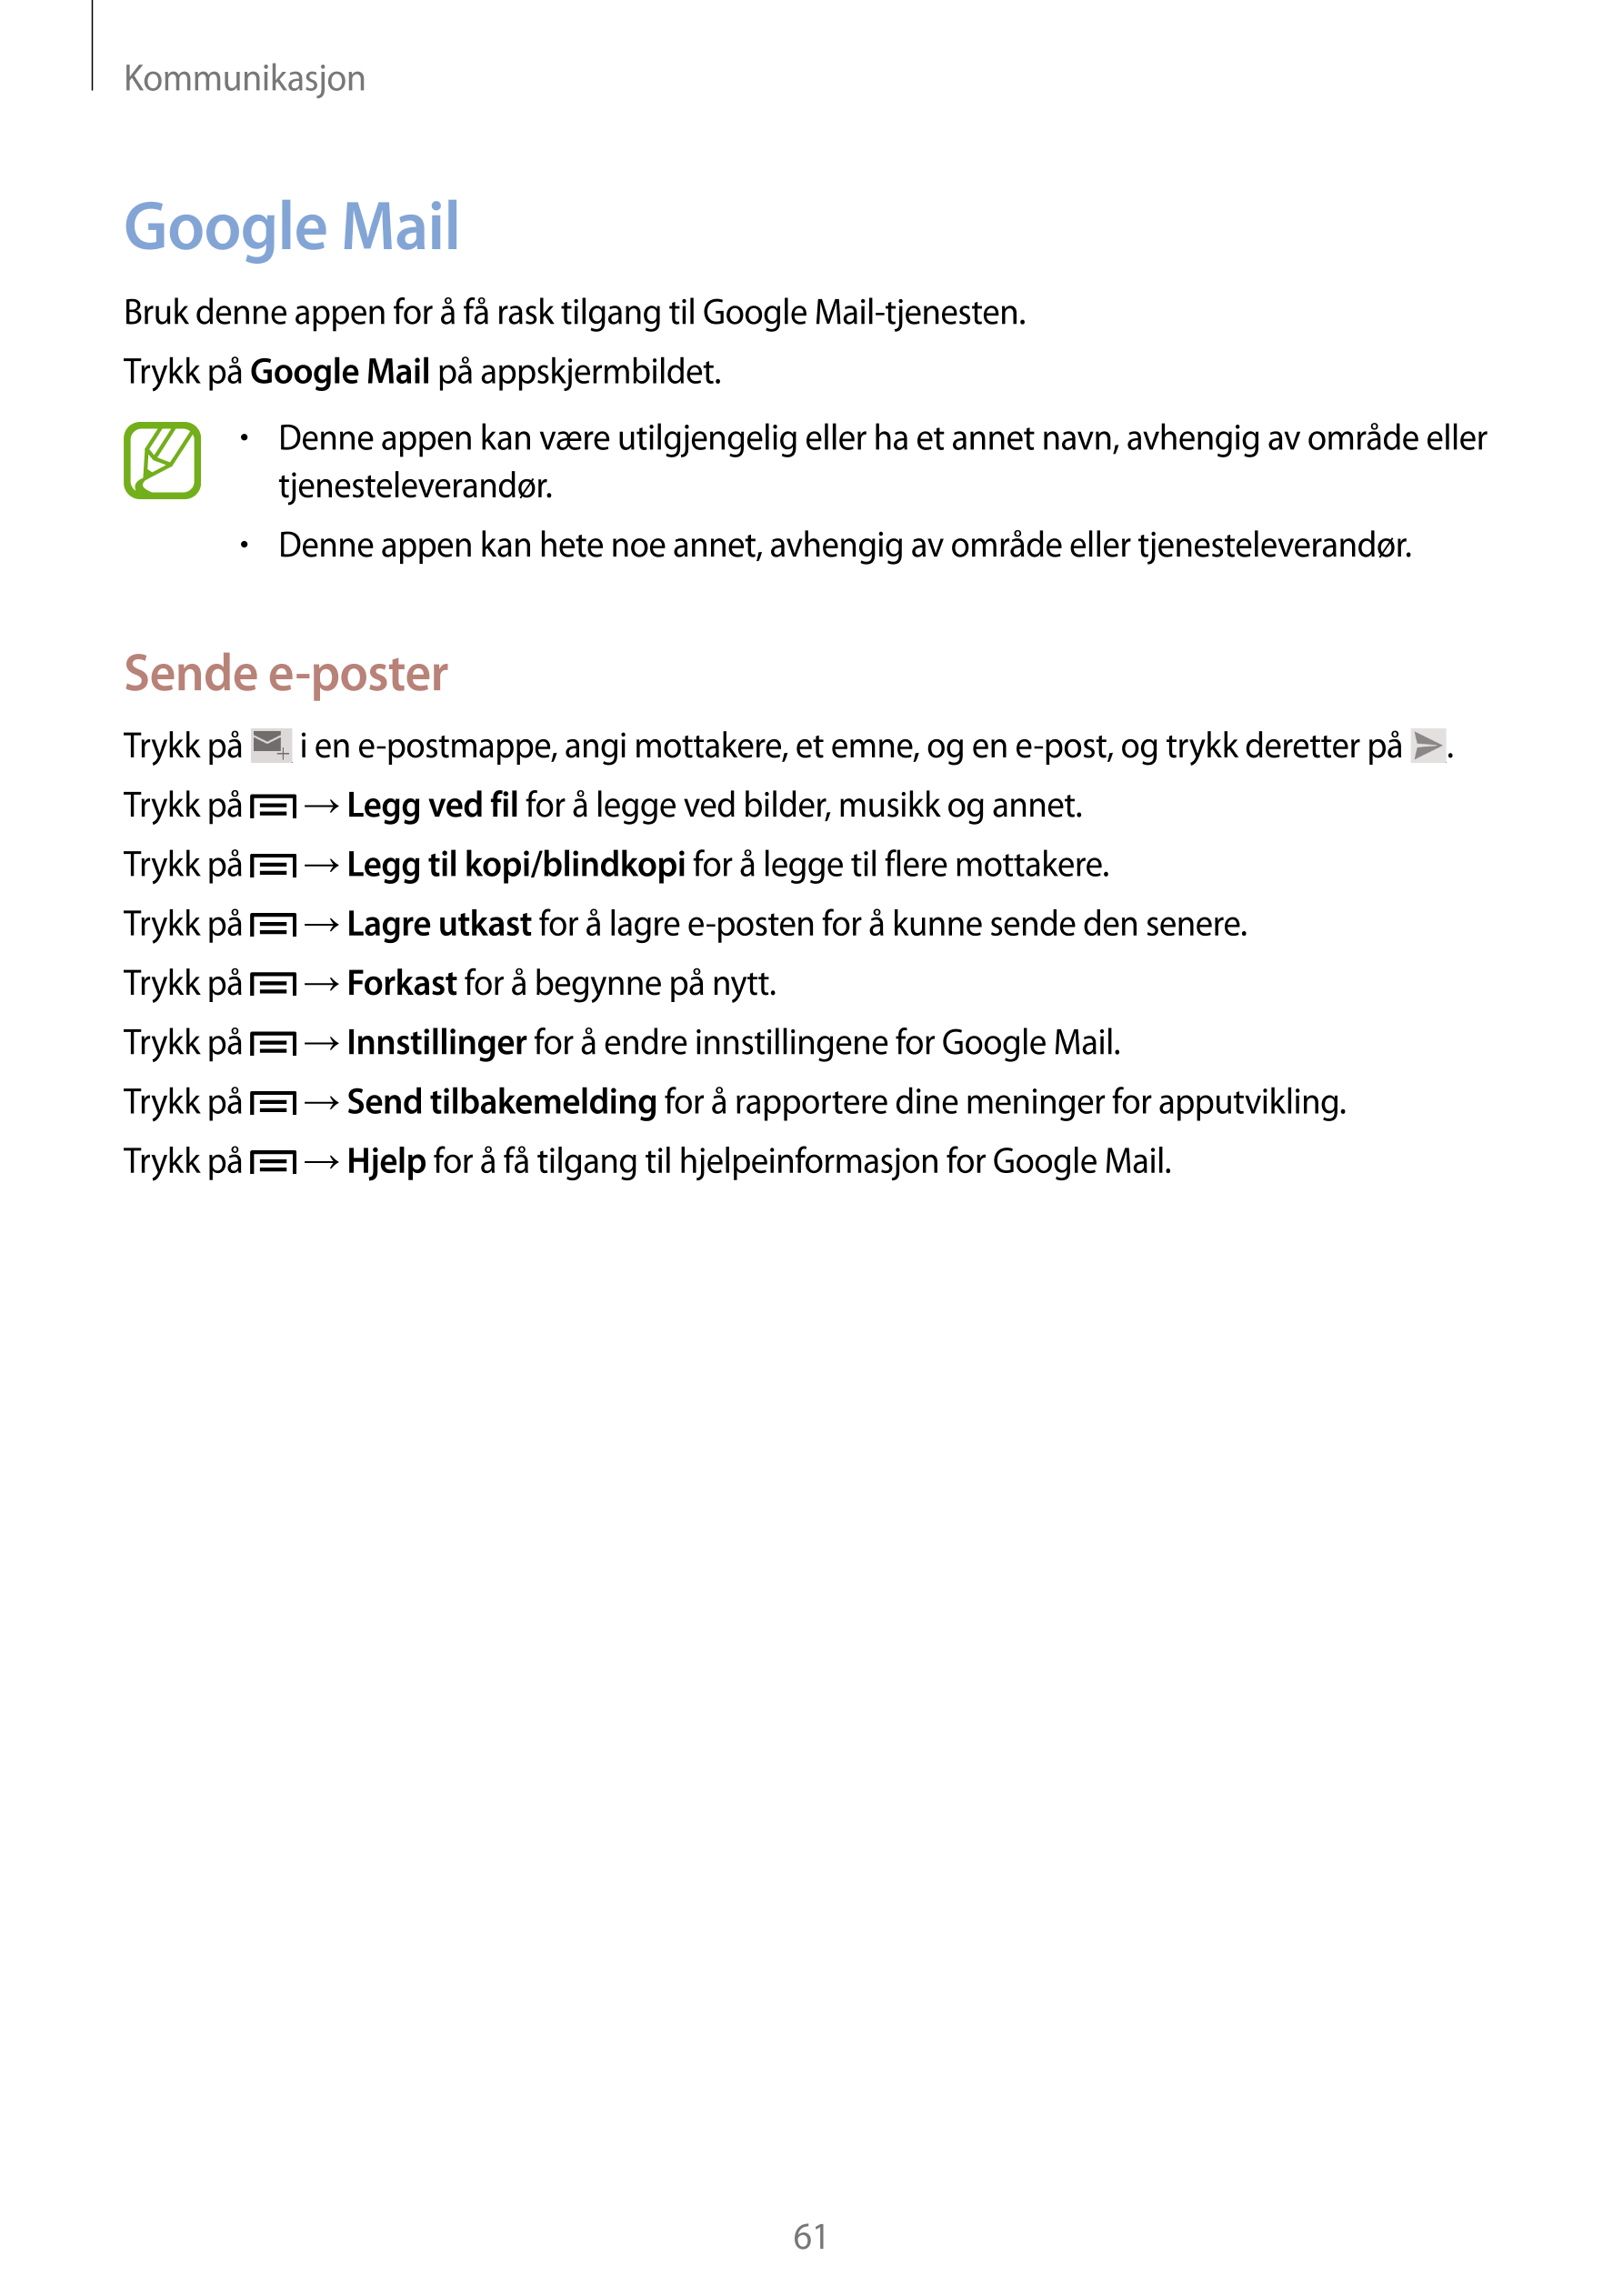 Kommunikasjon
Google Mail
Bruk denne appen for å få rask tilgang til Google Mail-tjenesten.
Trykk på  Google Mail på appskjermbi